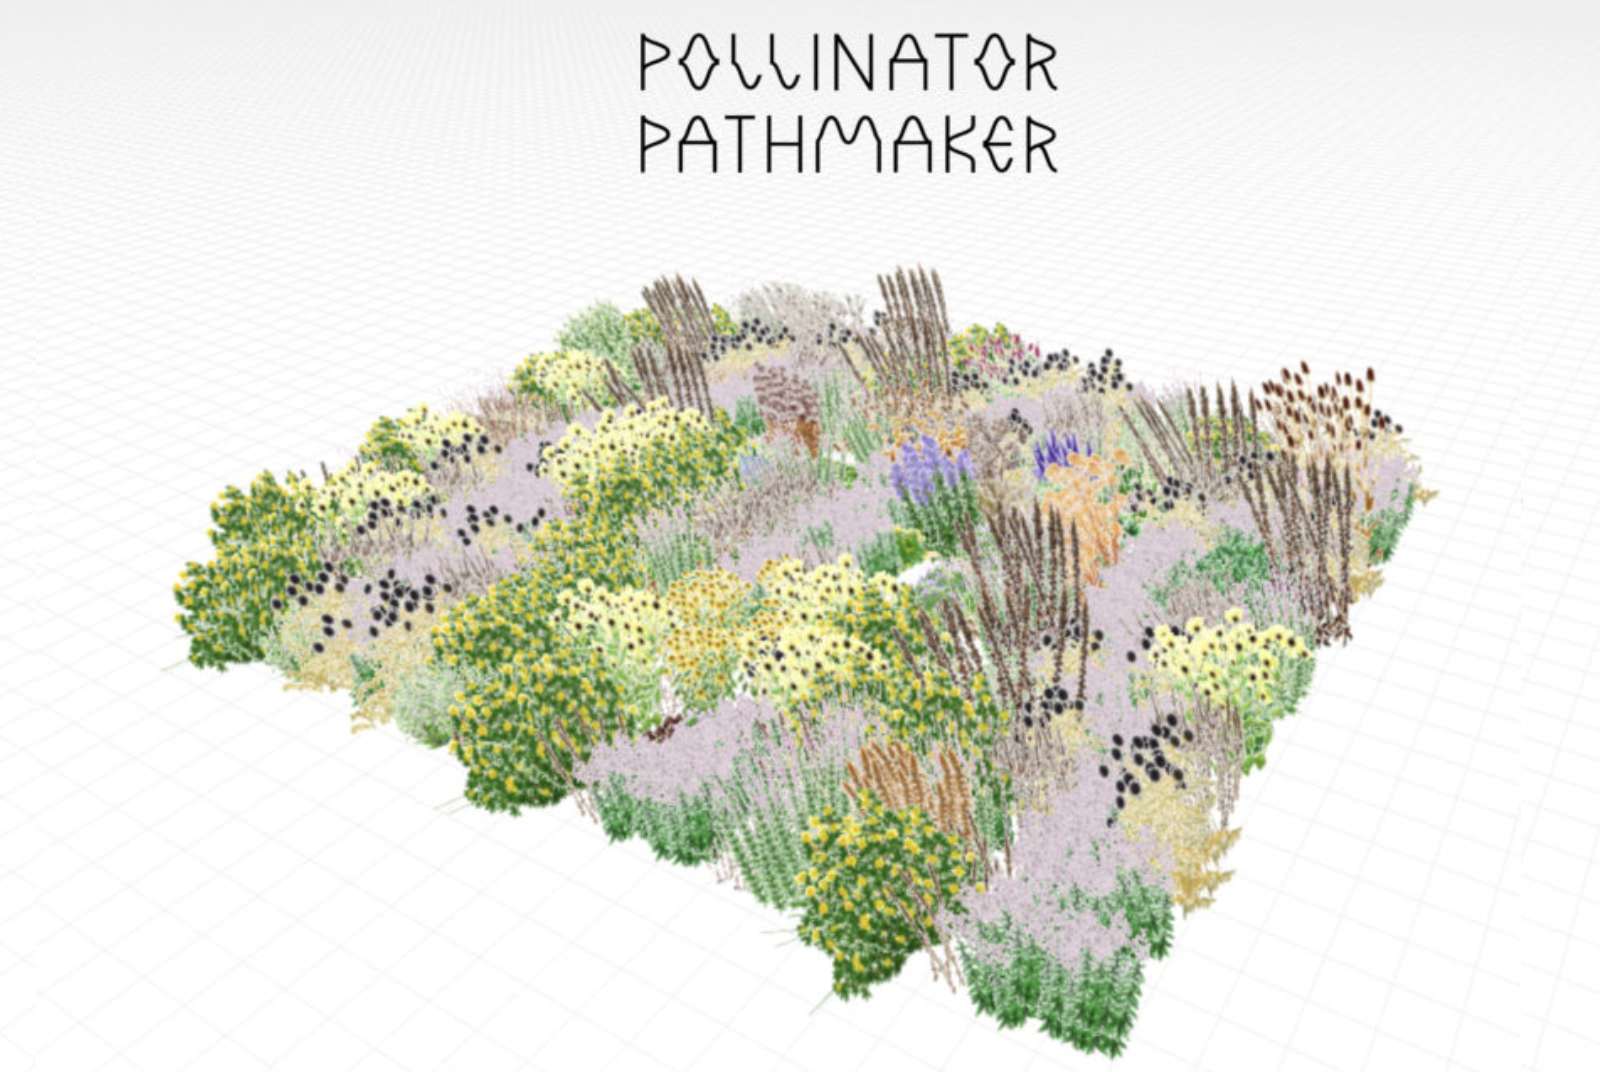 使用者可透過「授粉路徑創造者」生成的園藝構圖，作為種植的參考方向。